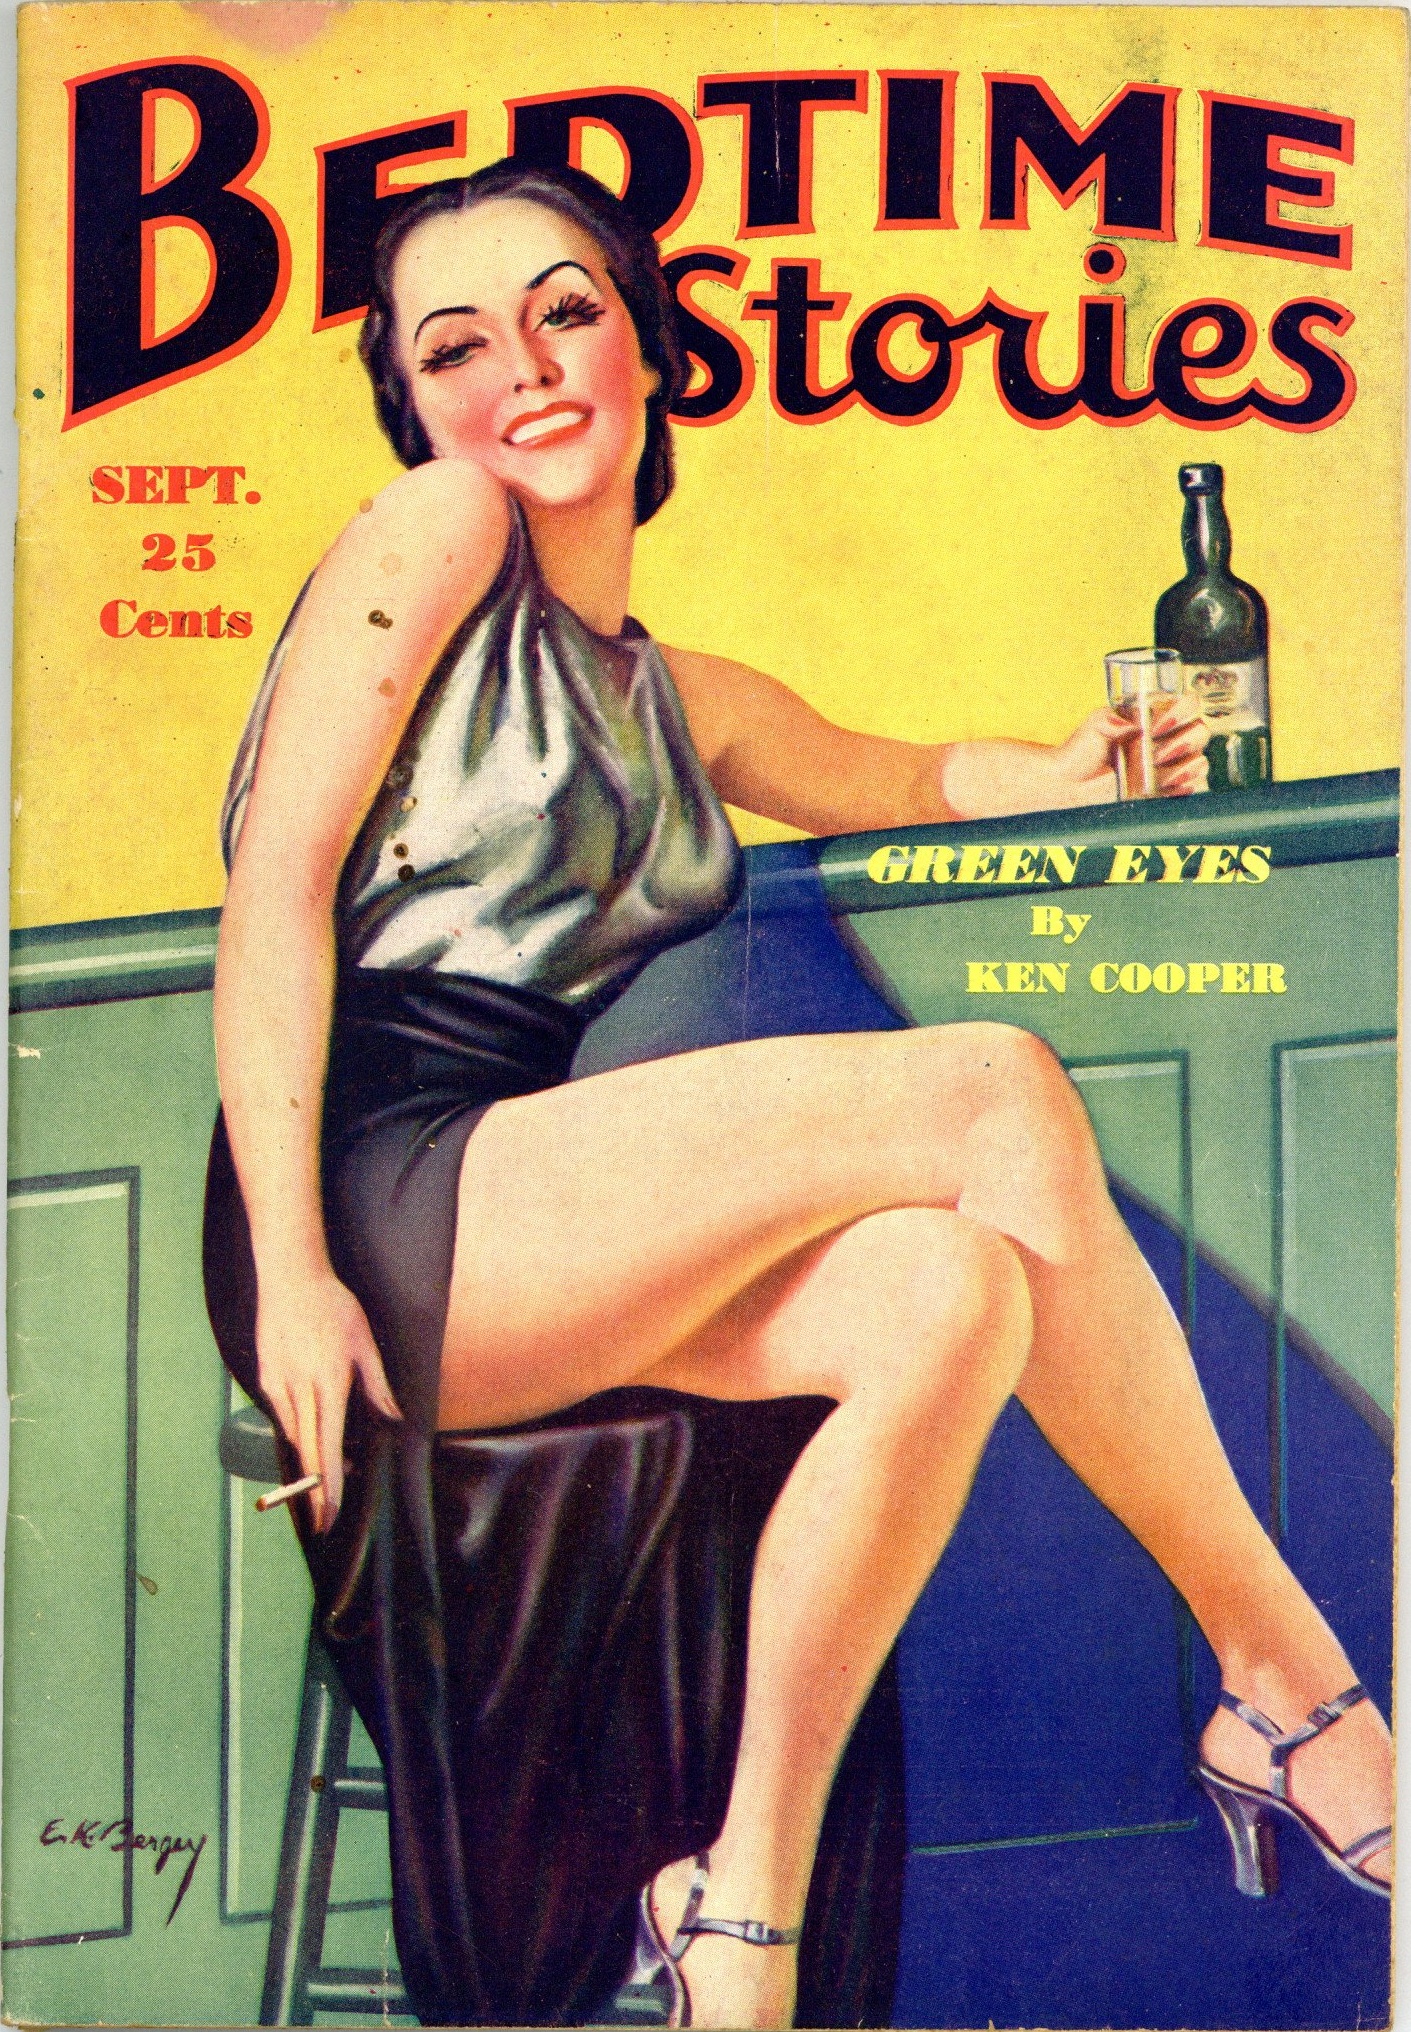 Bedtime Stories September 1935